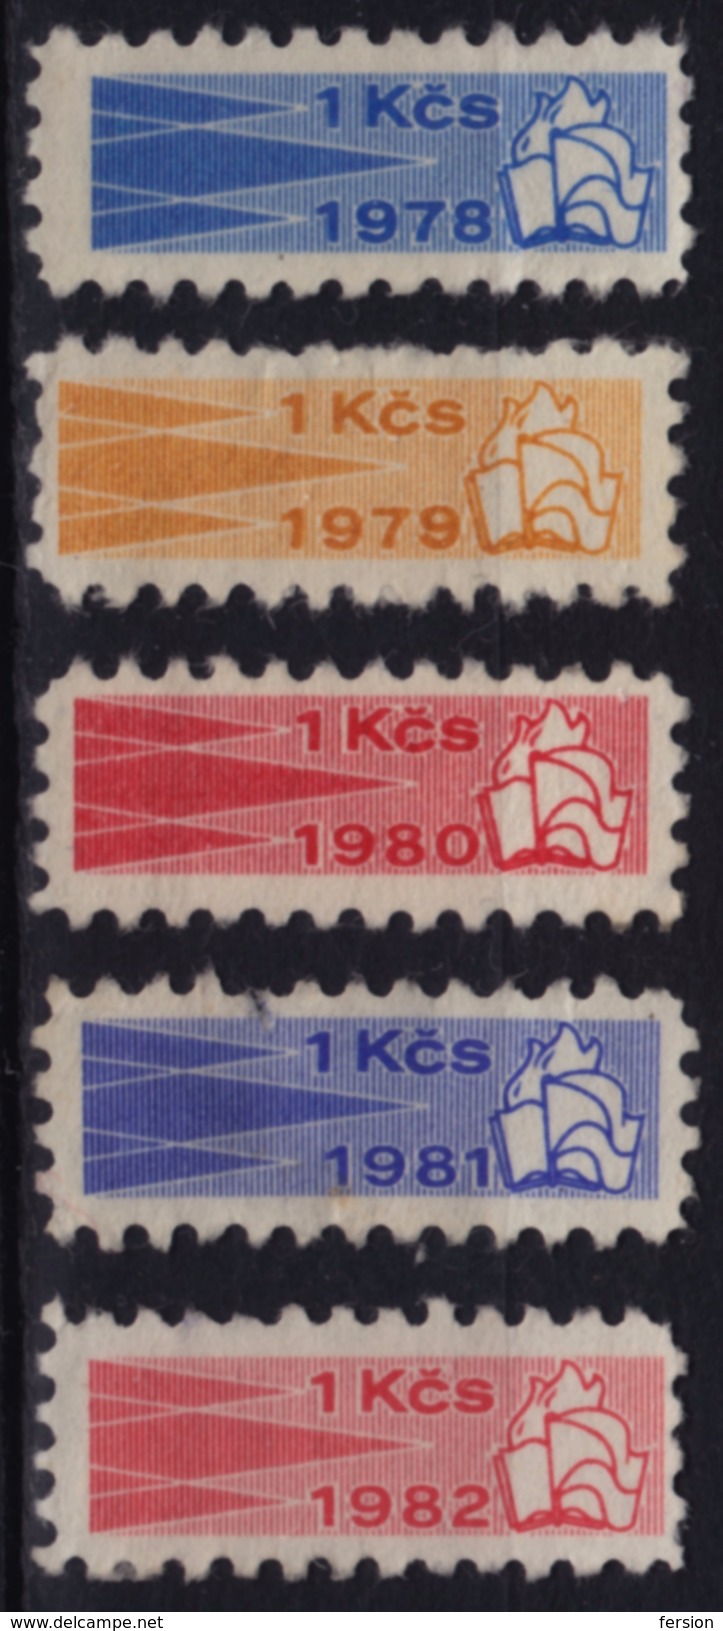 Kontrolní Znamka Controll Member Stamp 1978 1979 1980 1981 1982 Czechoslovakia Label Cinderella Vignette FLAG BOKK FLAME - Dienstmarken